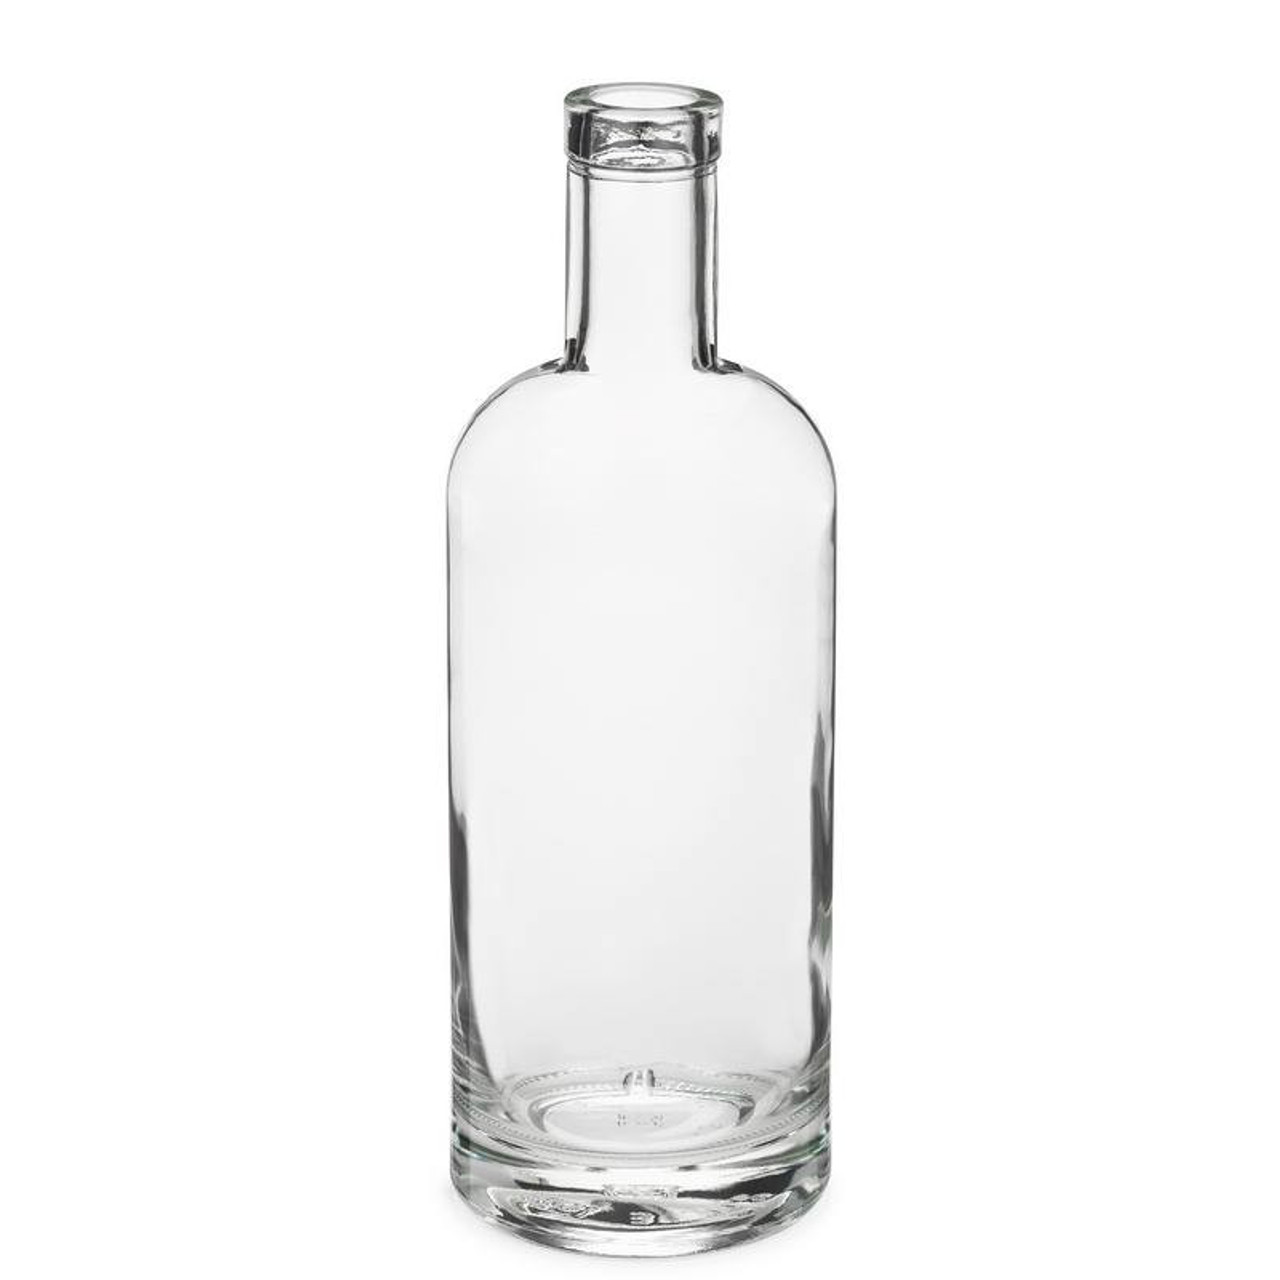 750ml Clear Glass Aspect Liquor Bottle - 12/Case, Clear Type III 21.5 mm